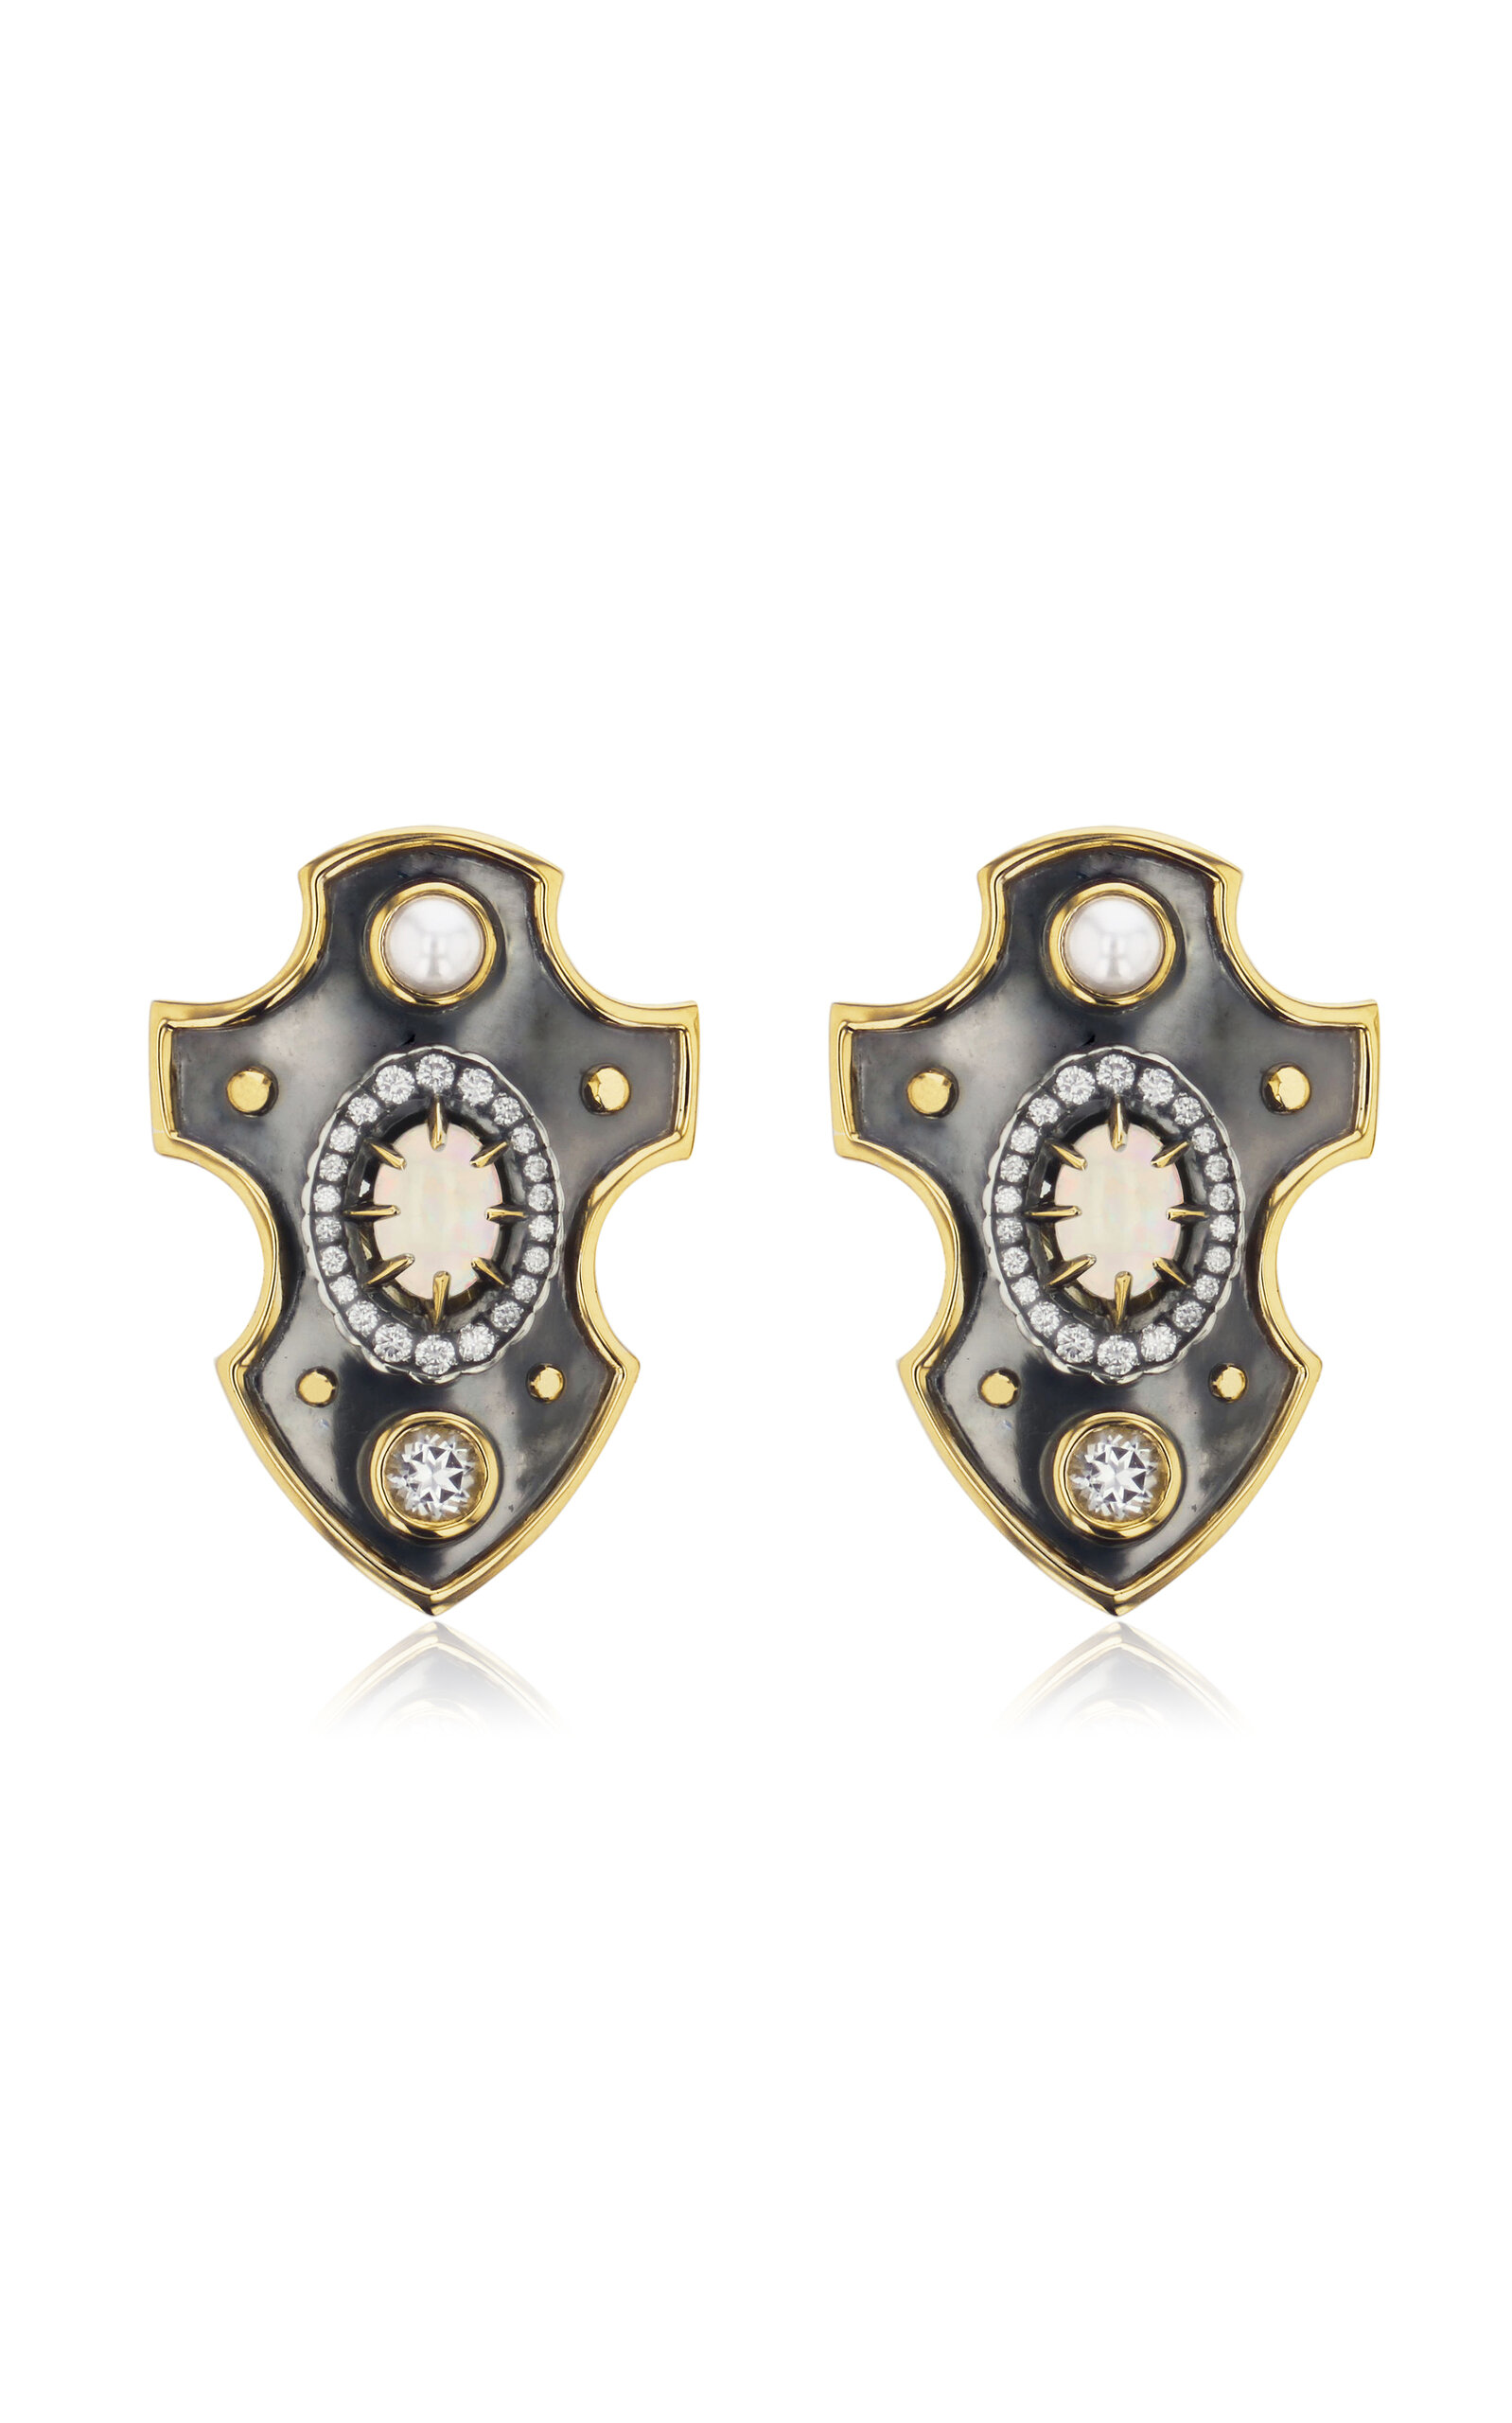 Elie Top Women's Ecu 18K Yellow Gold; Distressed Silver Opal Earrings